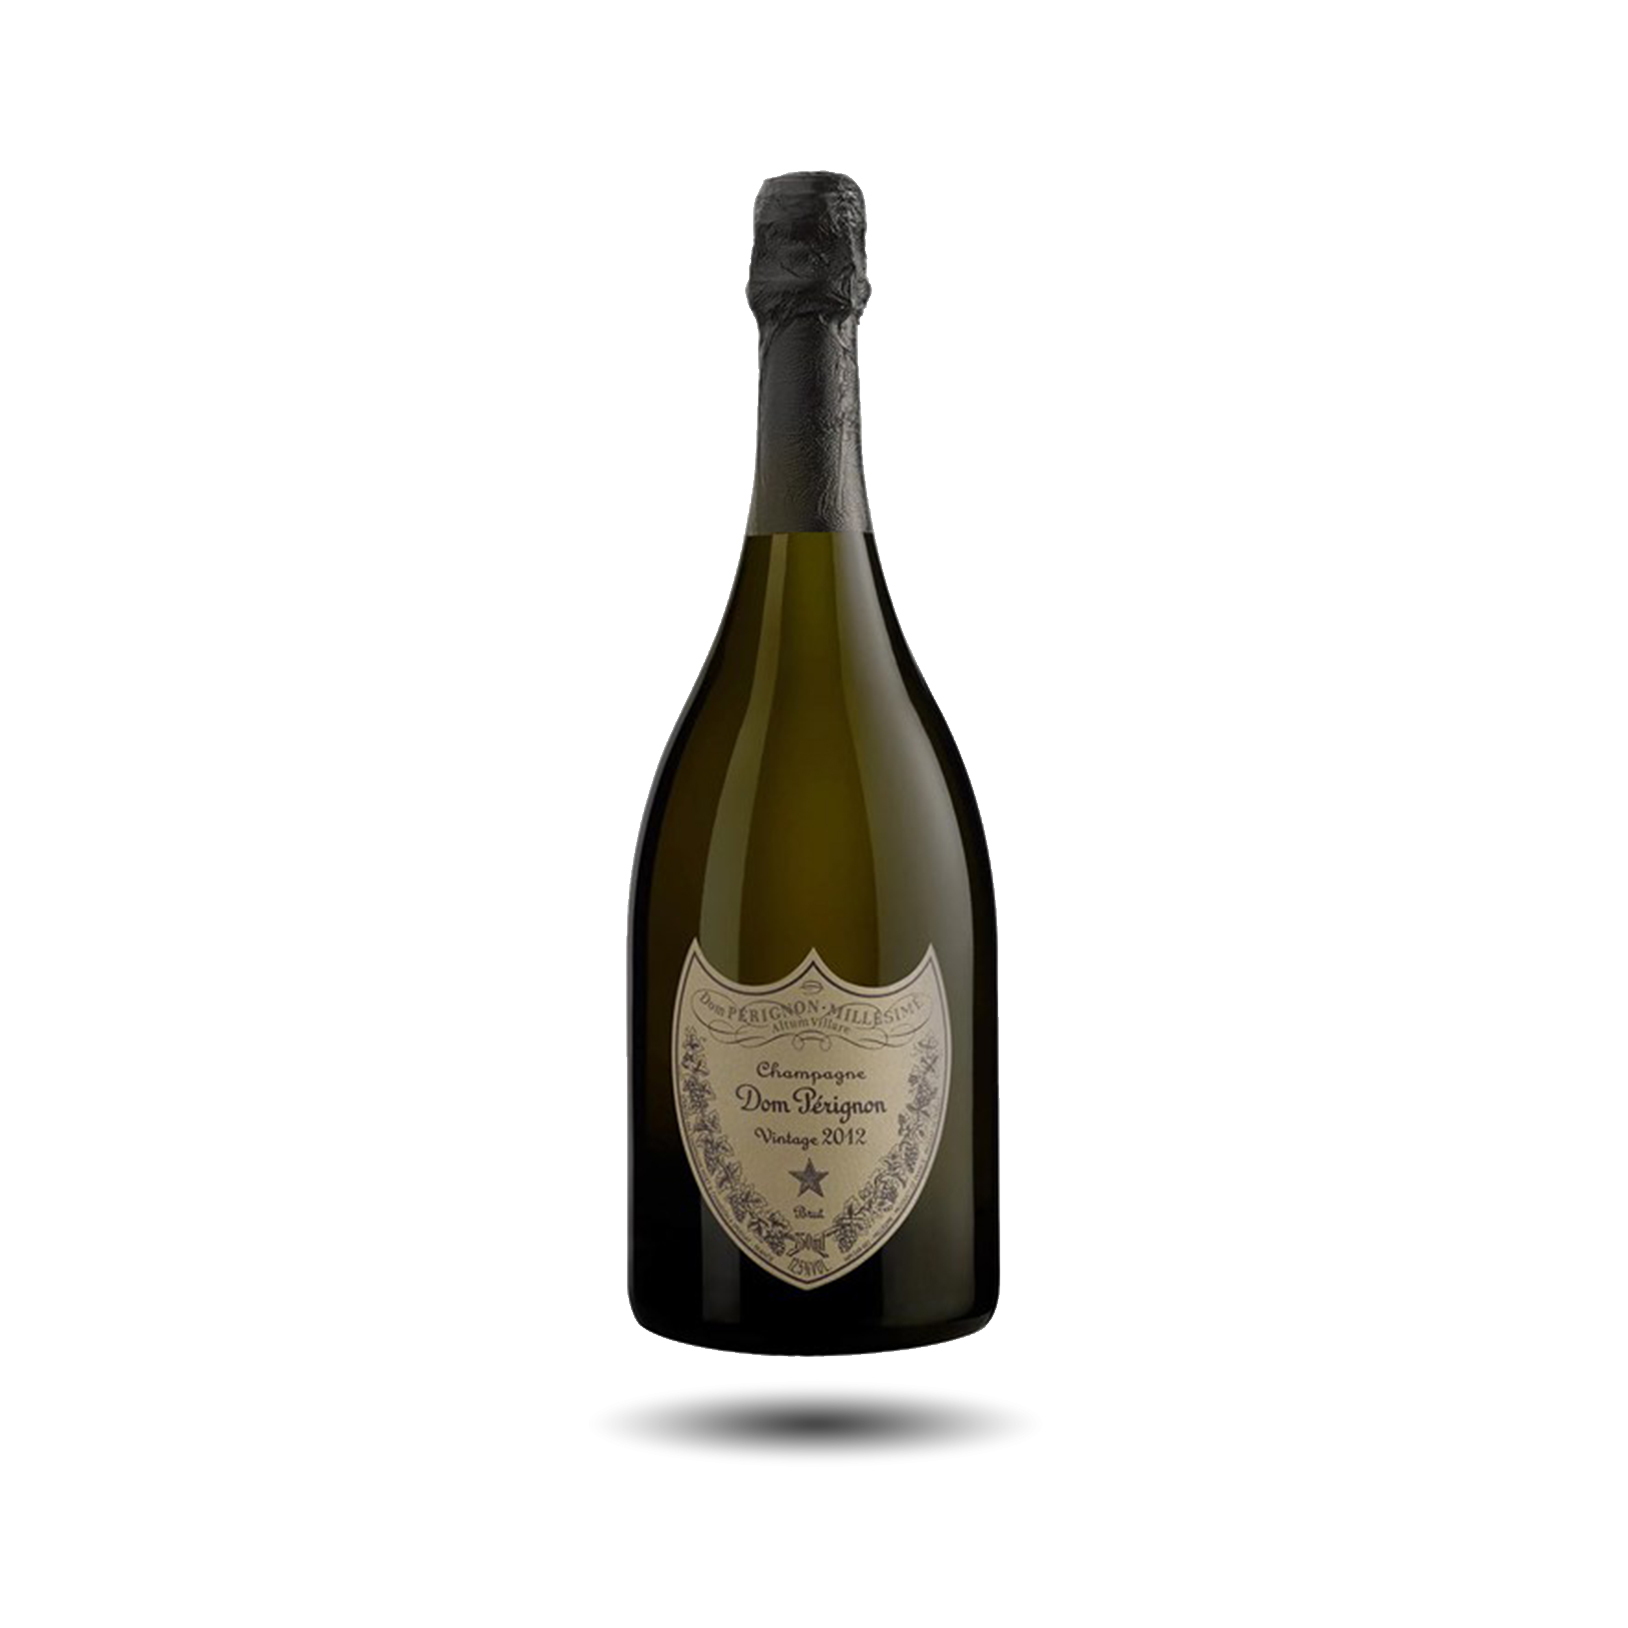 Champagne - Dom Pérignon, Brut, Vintage 2013